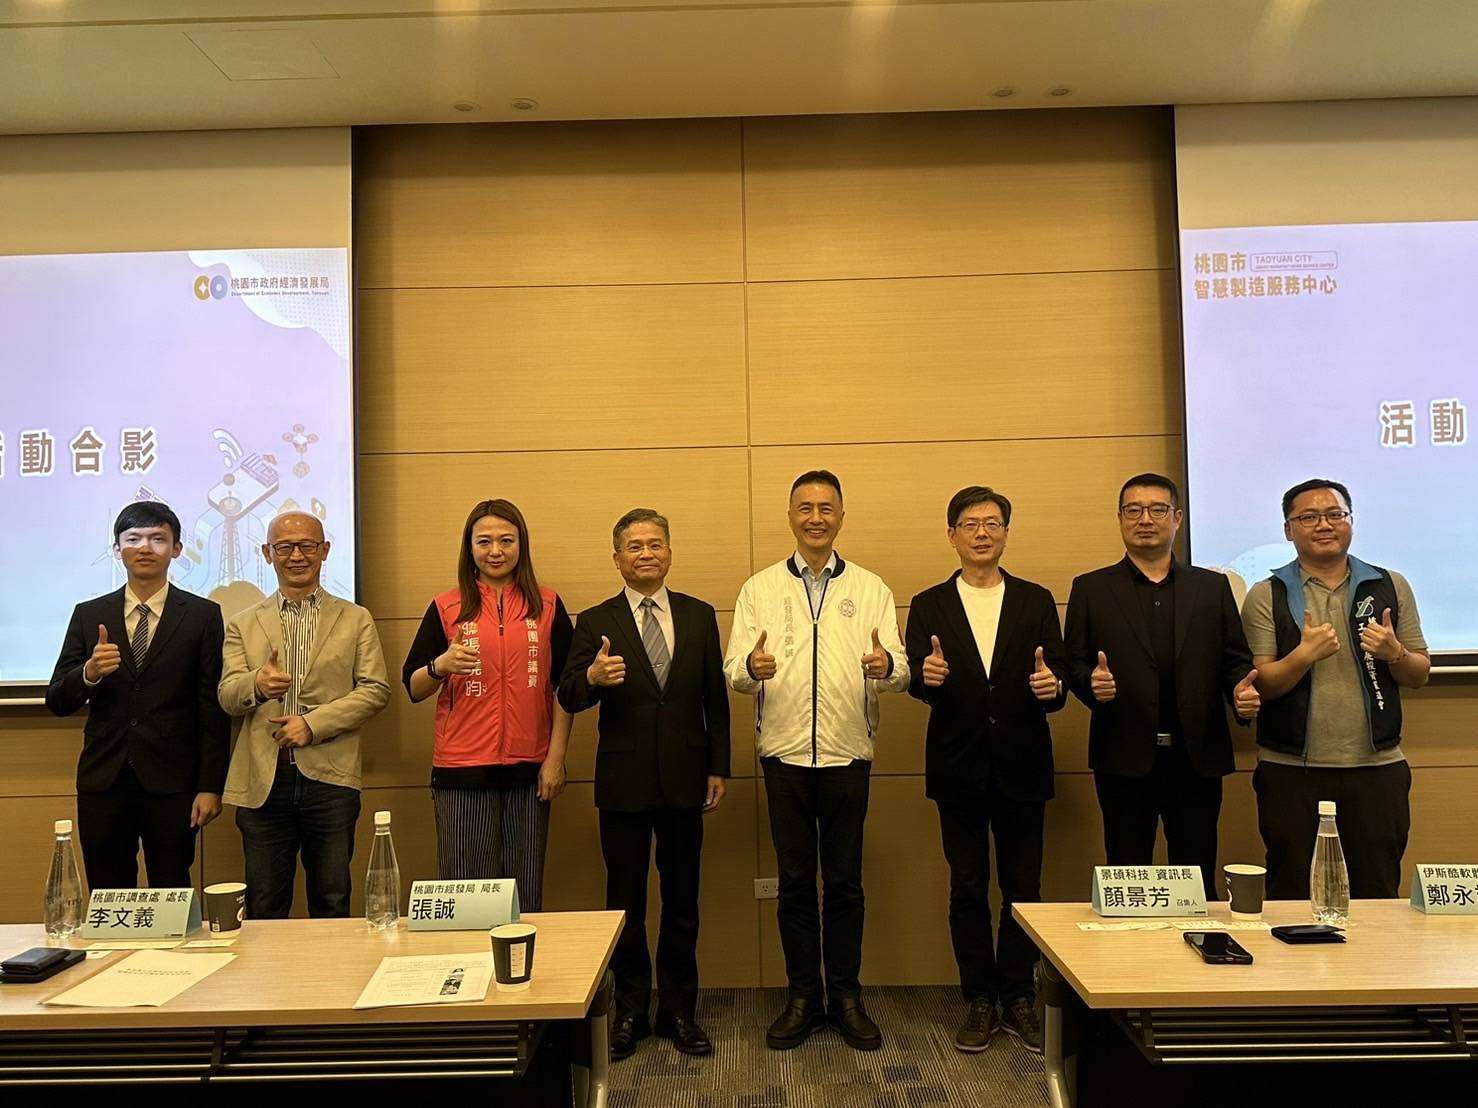 桃園調查處攜手台灣電路板協會簽署MOU 共建安全數位生態圈